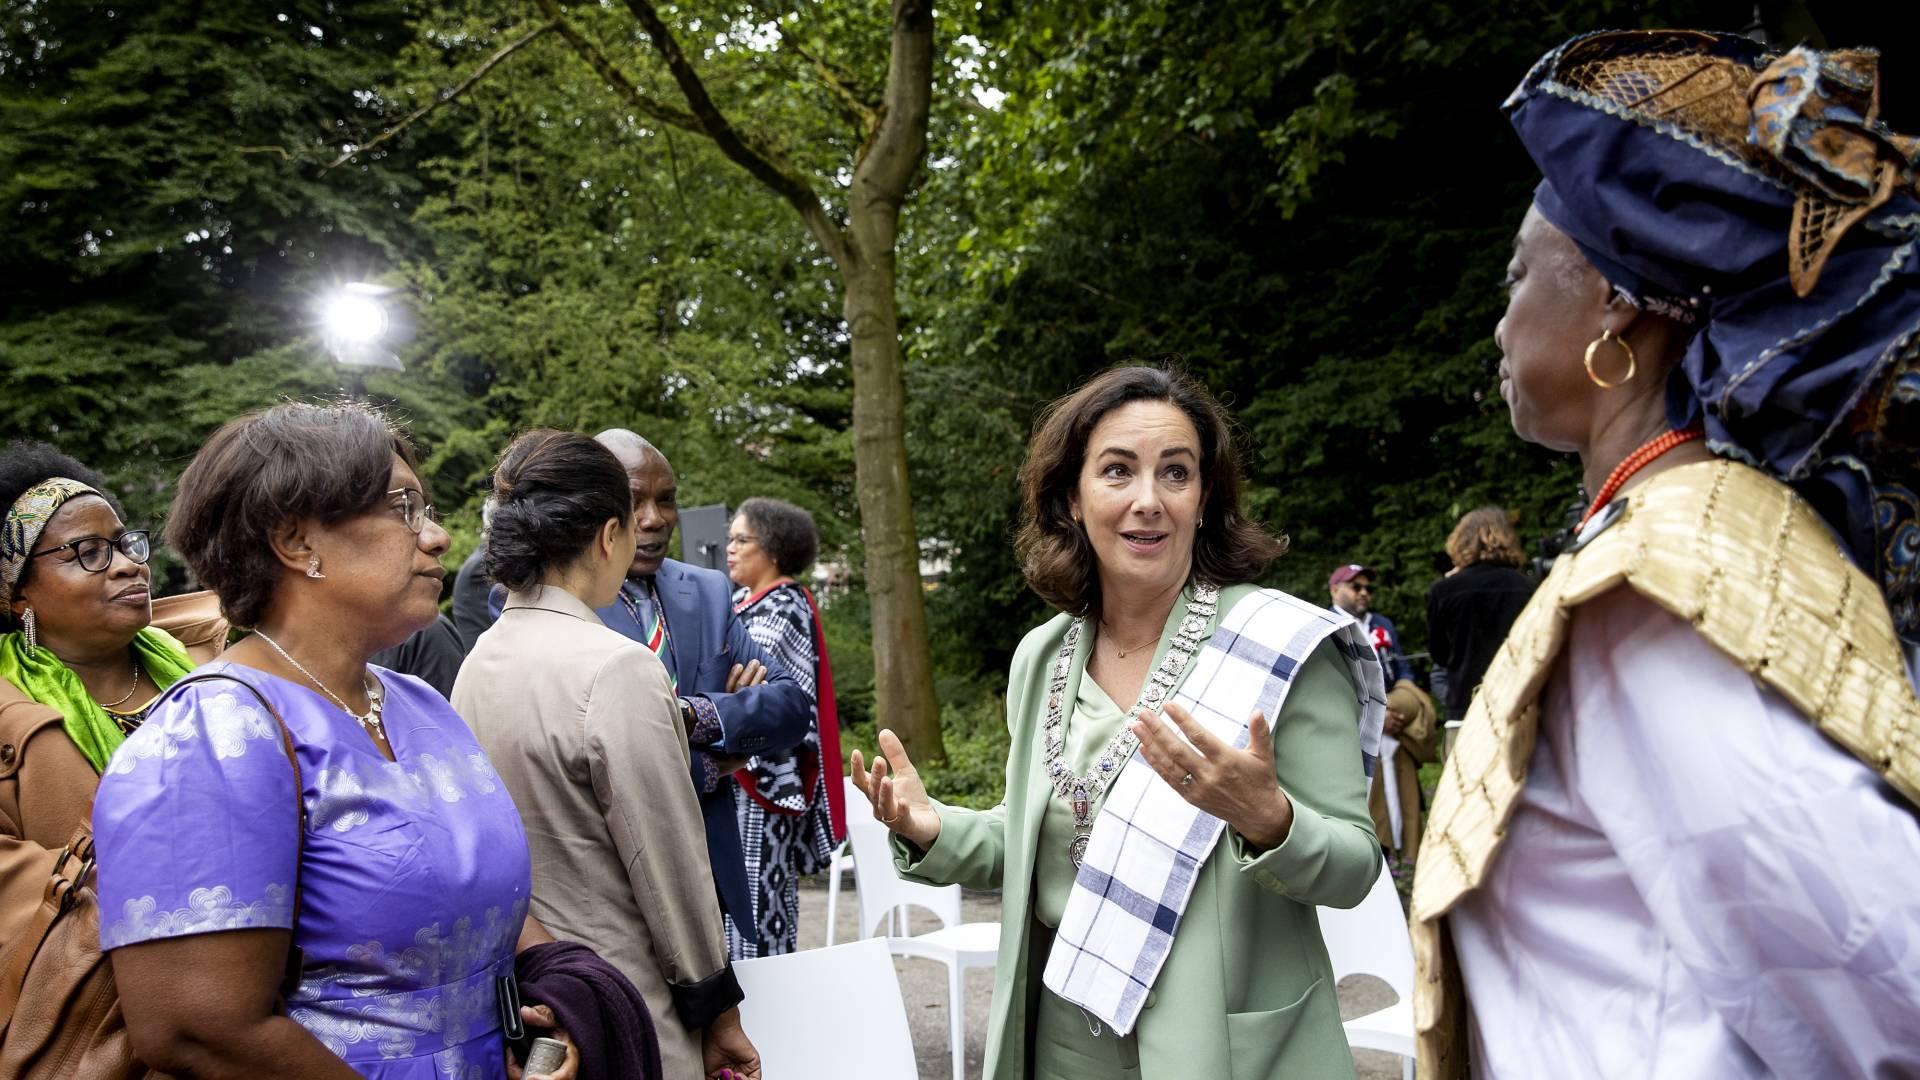 Burgemeester Halsema biedt excuses aan voor slavernijverleden Amsterdam